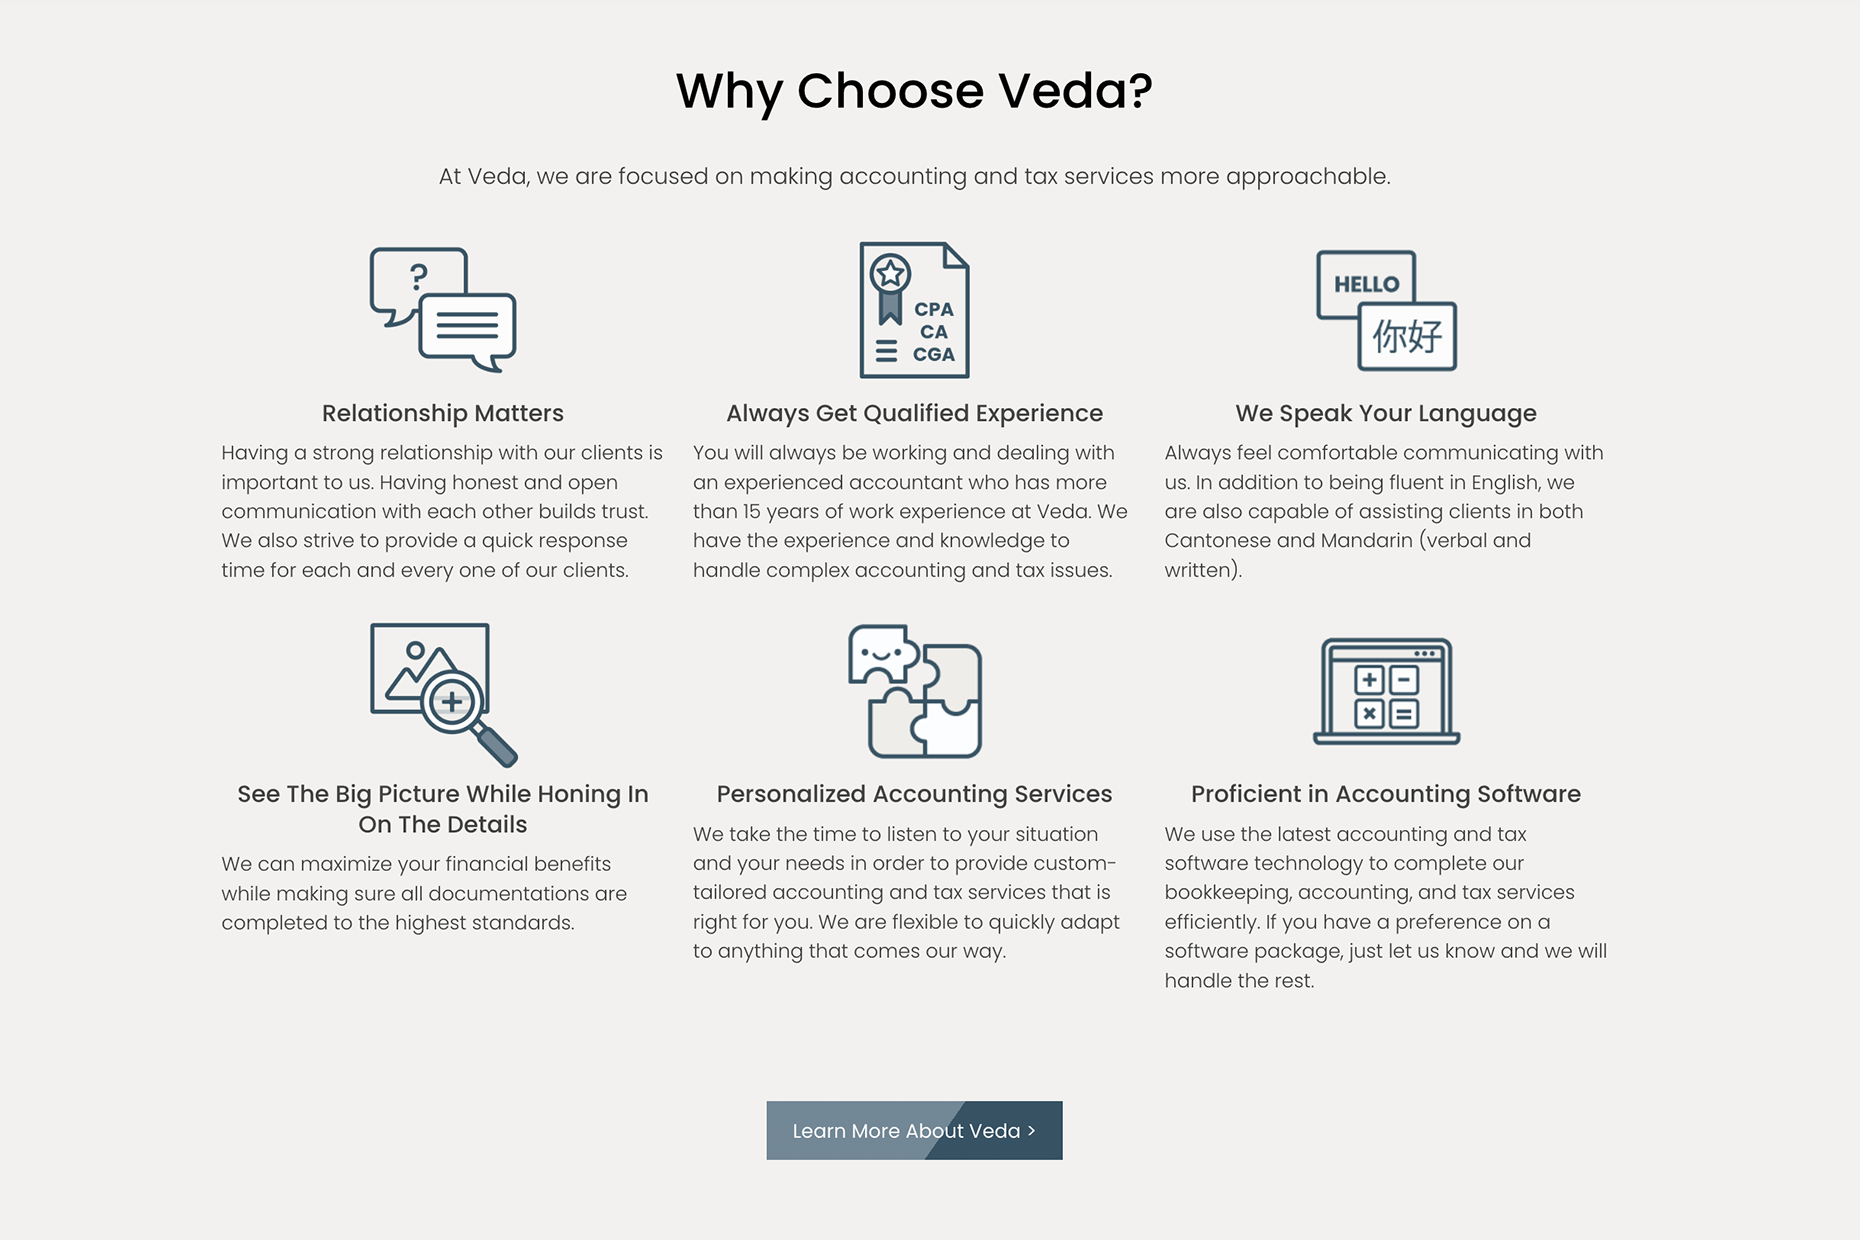 Why choose Veda